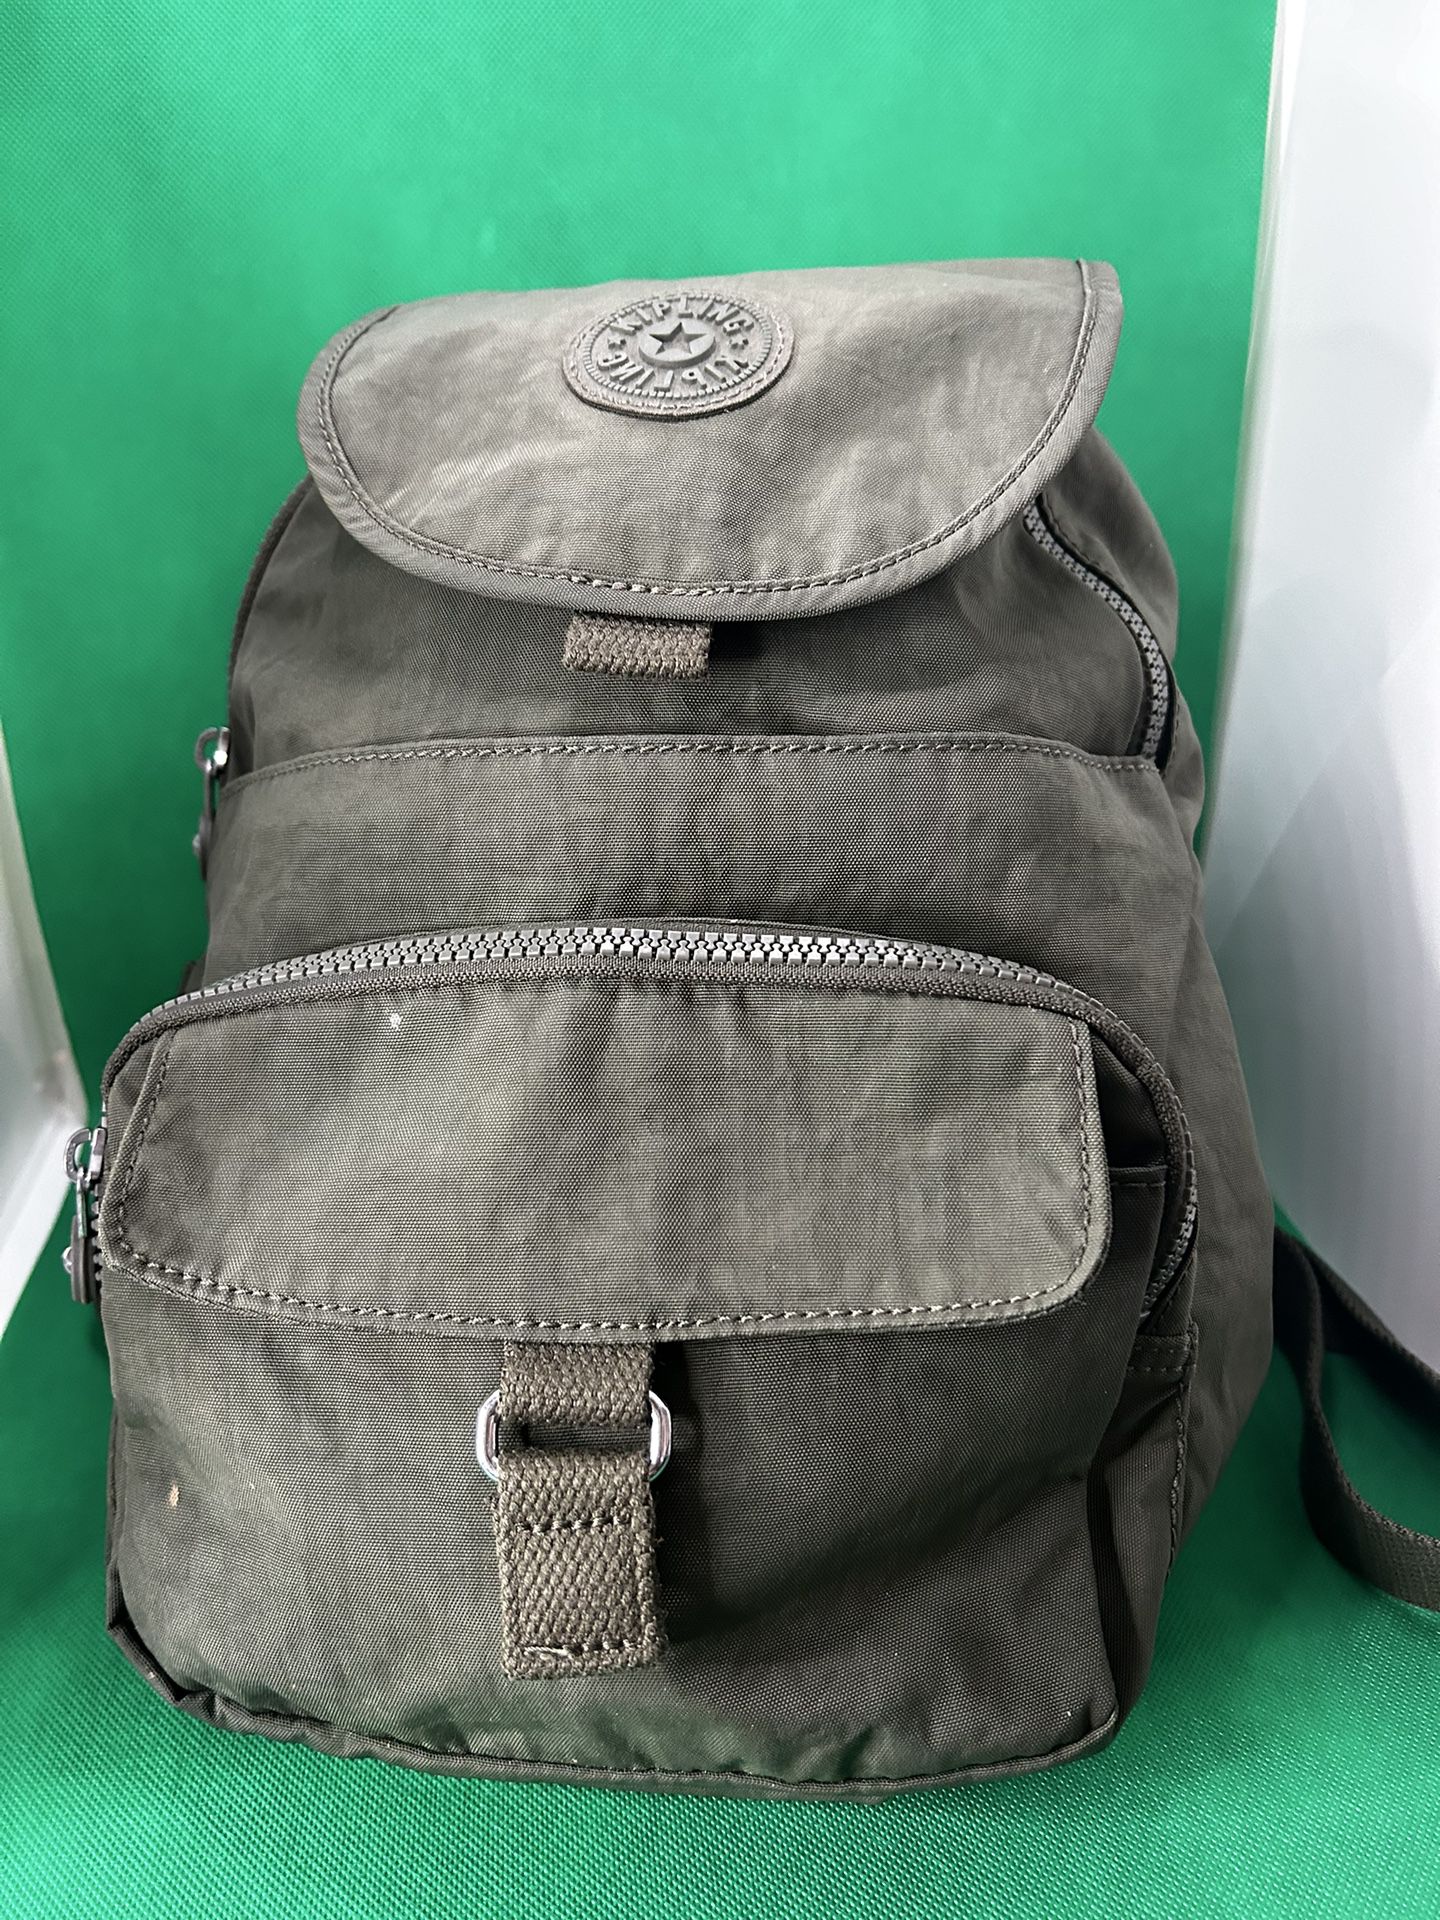 Kipling Women's Adjustable Straps Backpack